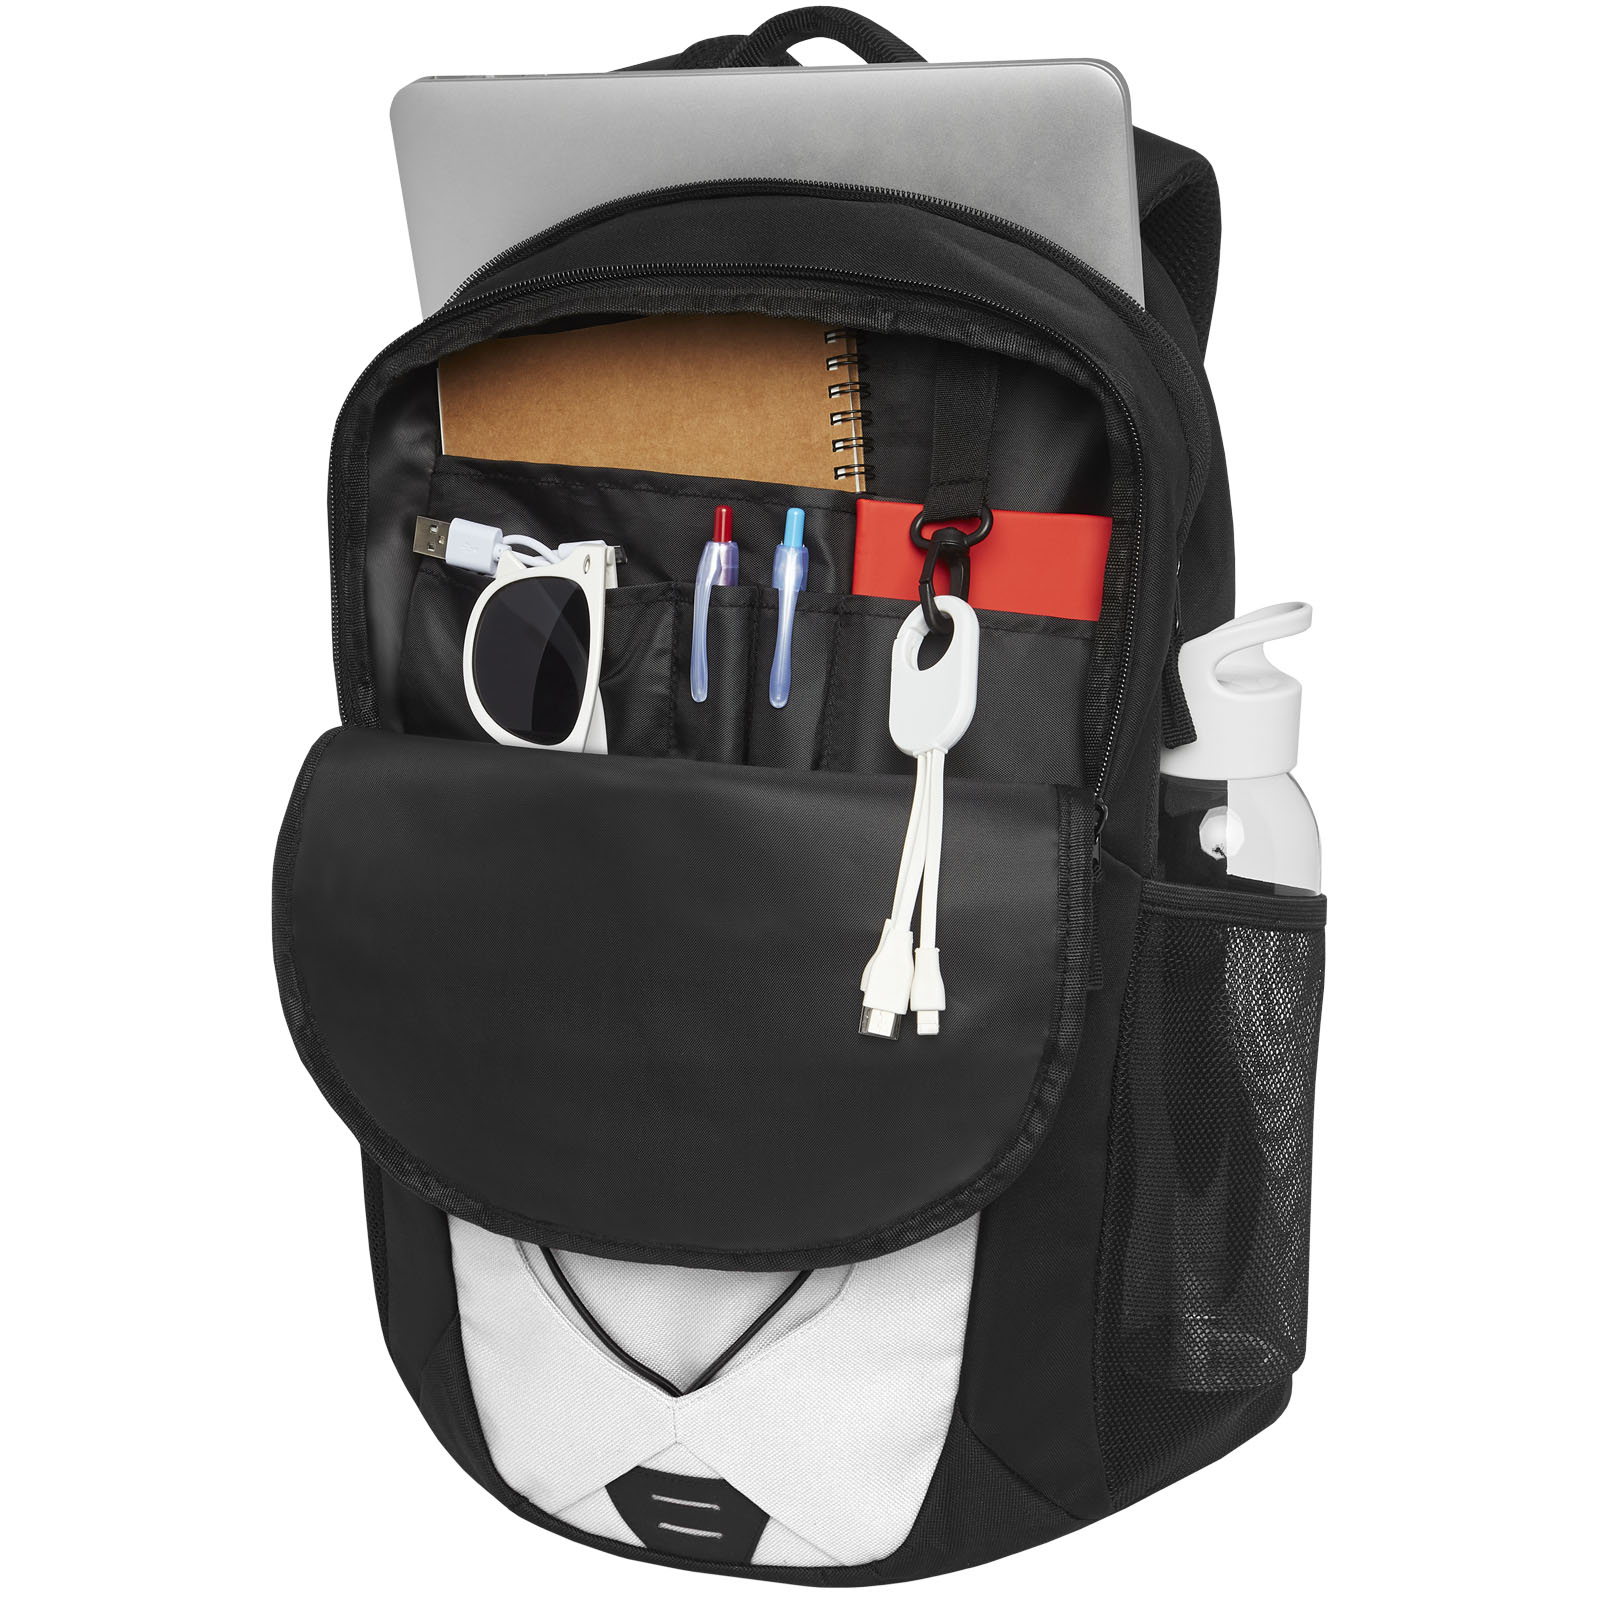 Advertising Laptop Backpacks - Trails backpack 24L - 3